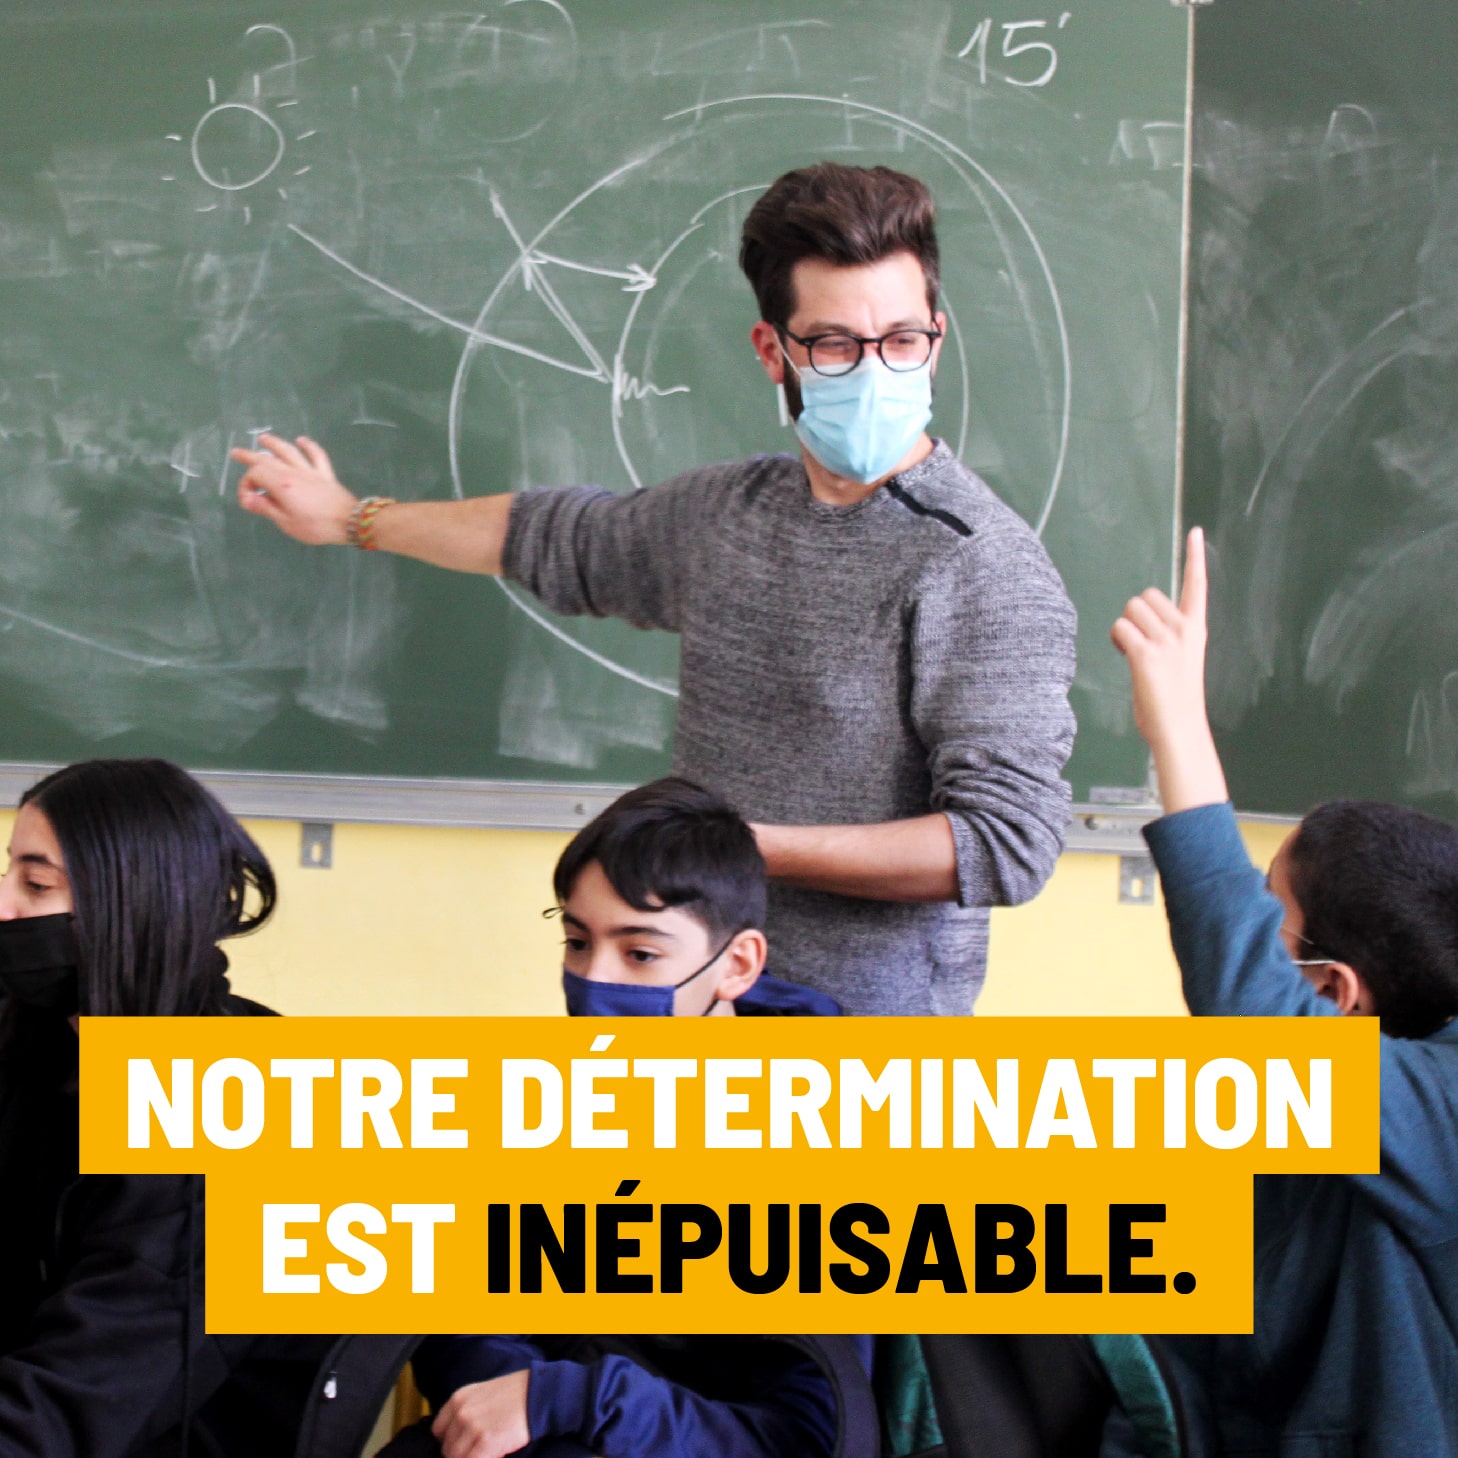 Visuel de campagne de don Geres "notre détermination est inépuisable"